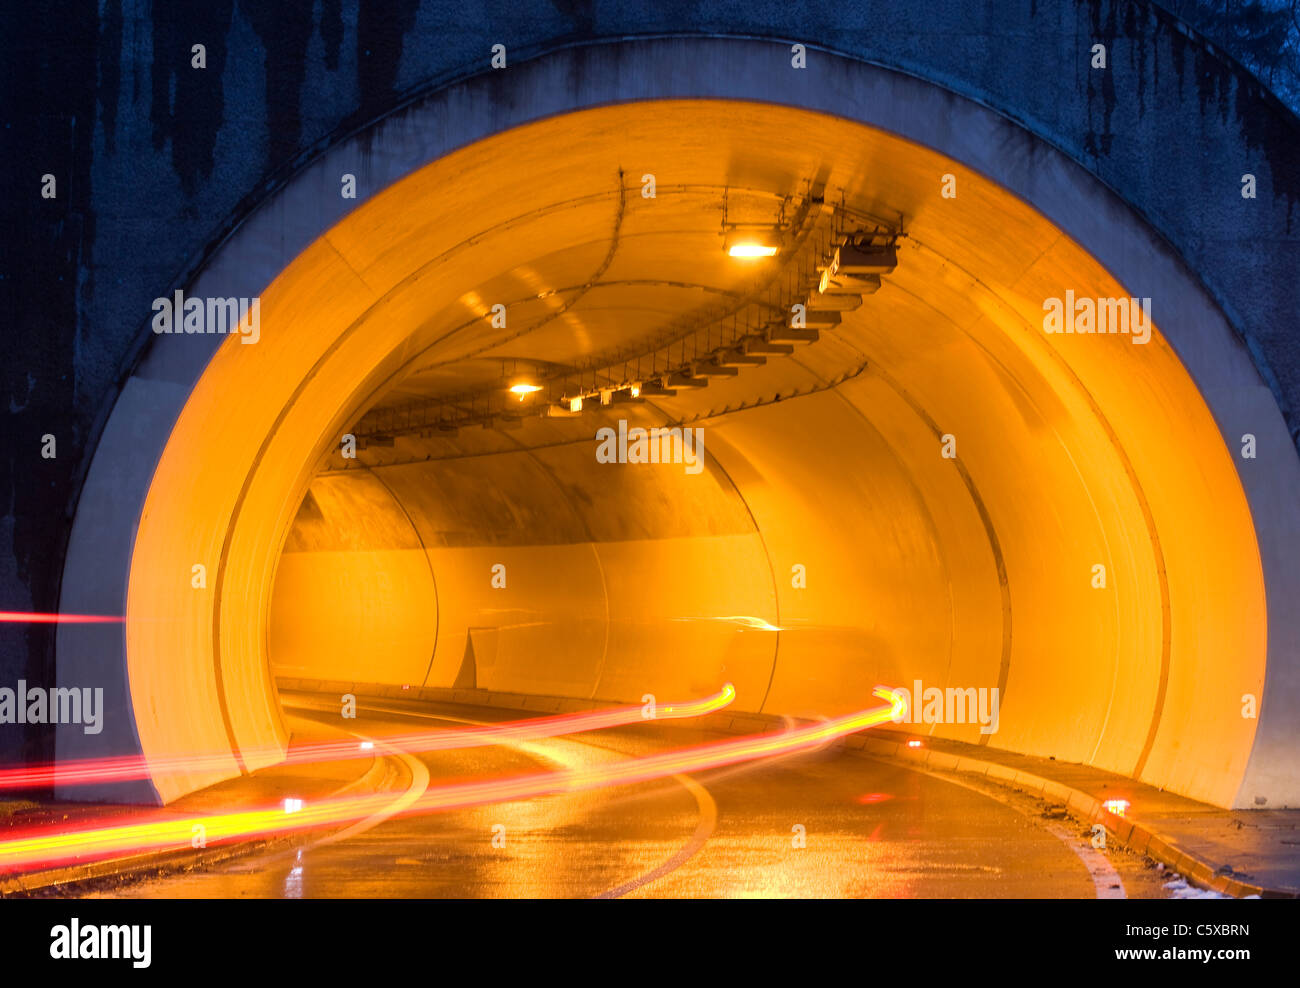 Austria, Salzkammergut, Mondsee, Illuminated tunnel Stock Photo